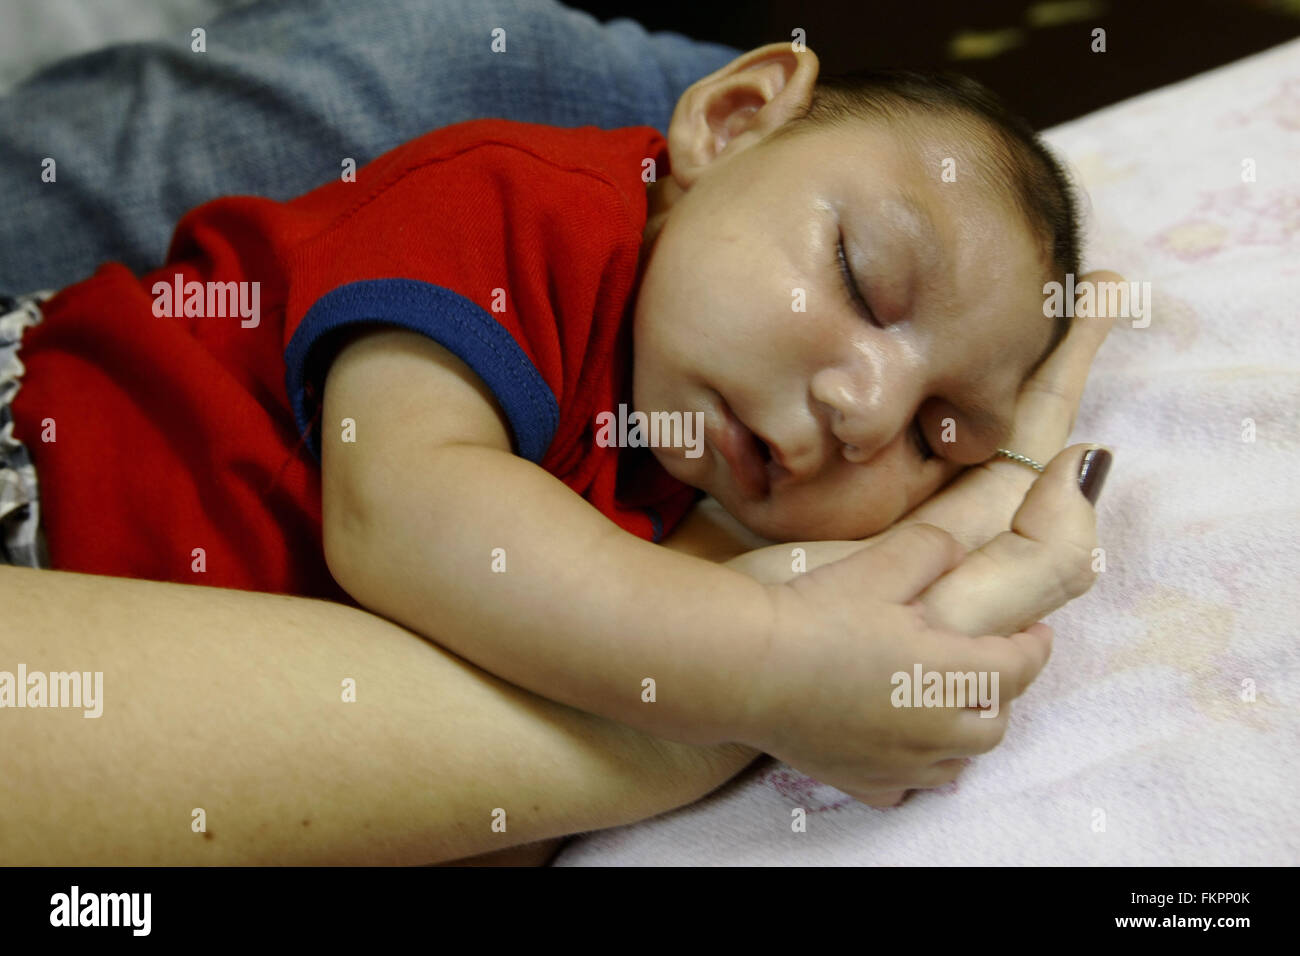 Río de Janeiro, Brasil. 9 Mar, 2016. Luiz Philipe, quien nació con microcefalia, duerme en su casa en Marica, estado de Río de Janeiro, Brasil, el 9 de marzo de 2016. Brasil adoptará la Organización Mundial de la Salud (OMS) las normas de la próxima semana para determinar si un bebé tiene microcefalia, el Ministerio de Salud de Brasil, dijo el miércoles. © Estefan Radovicz/Agencia o Dia/AGENCIA ESTADO/Xinhua/Alamy Live News Foto de stock